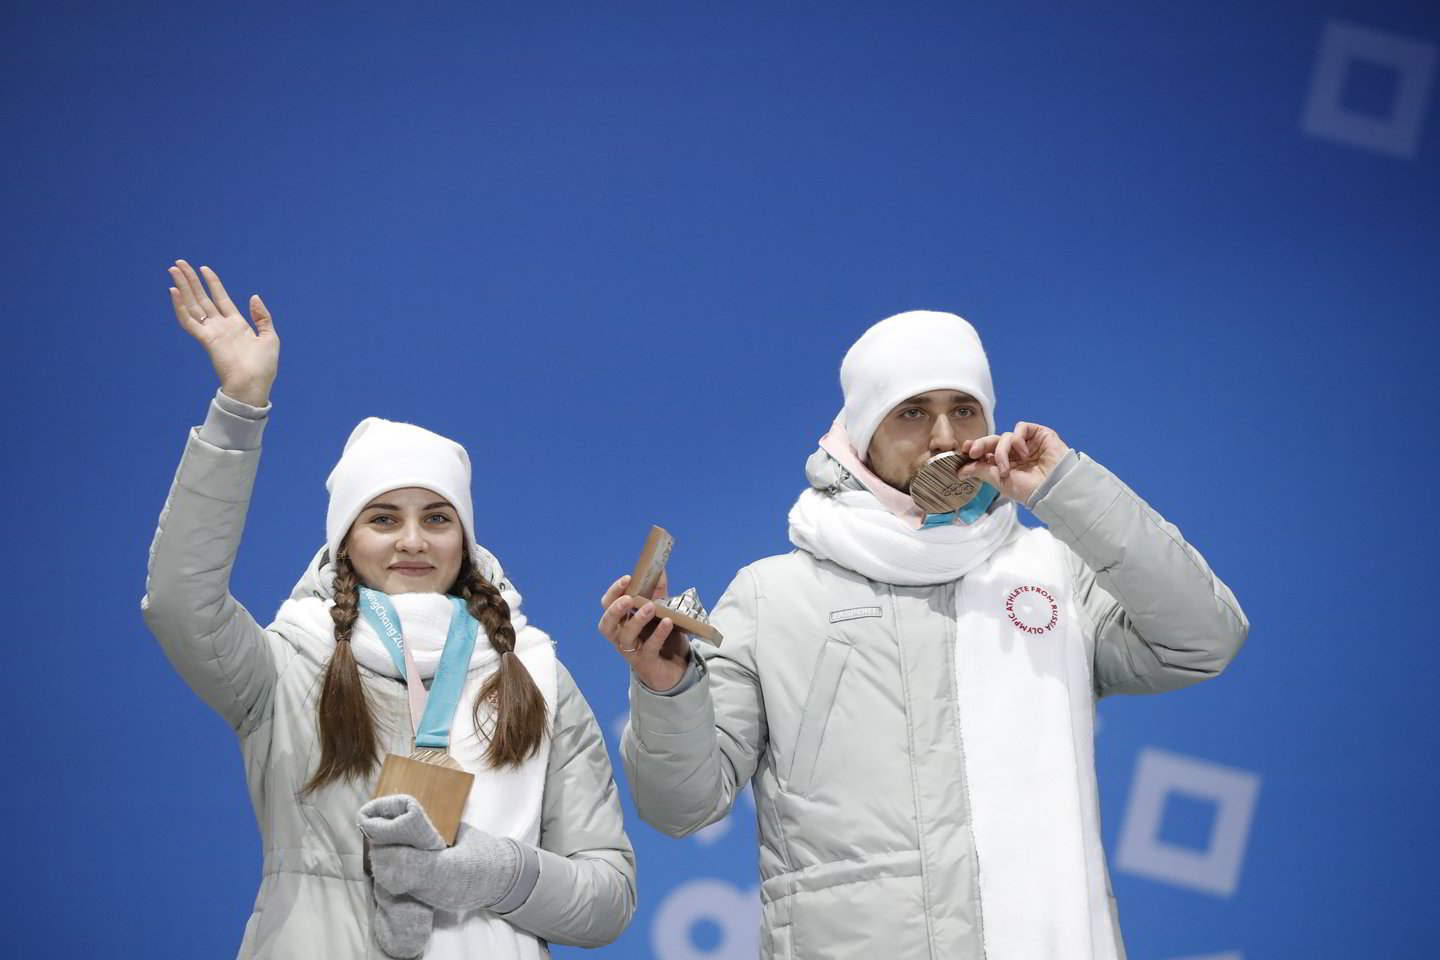  A.Krušelnickis su žmona A.Bryzgalova iškovojo akmenslydžio mišrių porų bronzą.<br> Reuters/Scanpix nuotr.